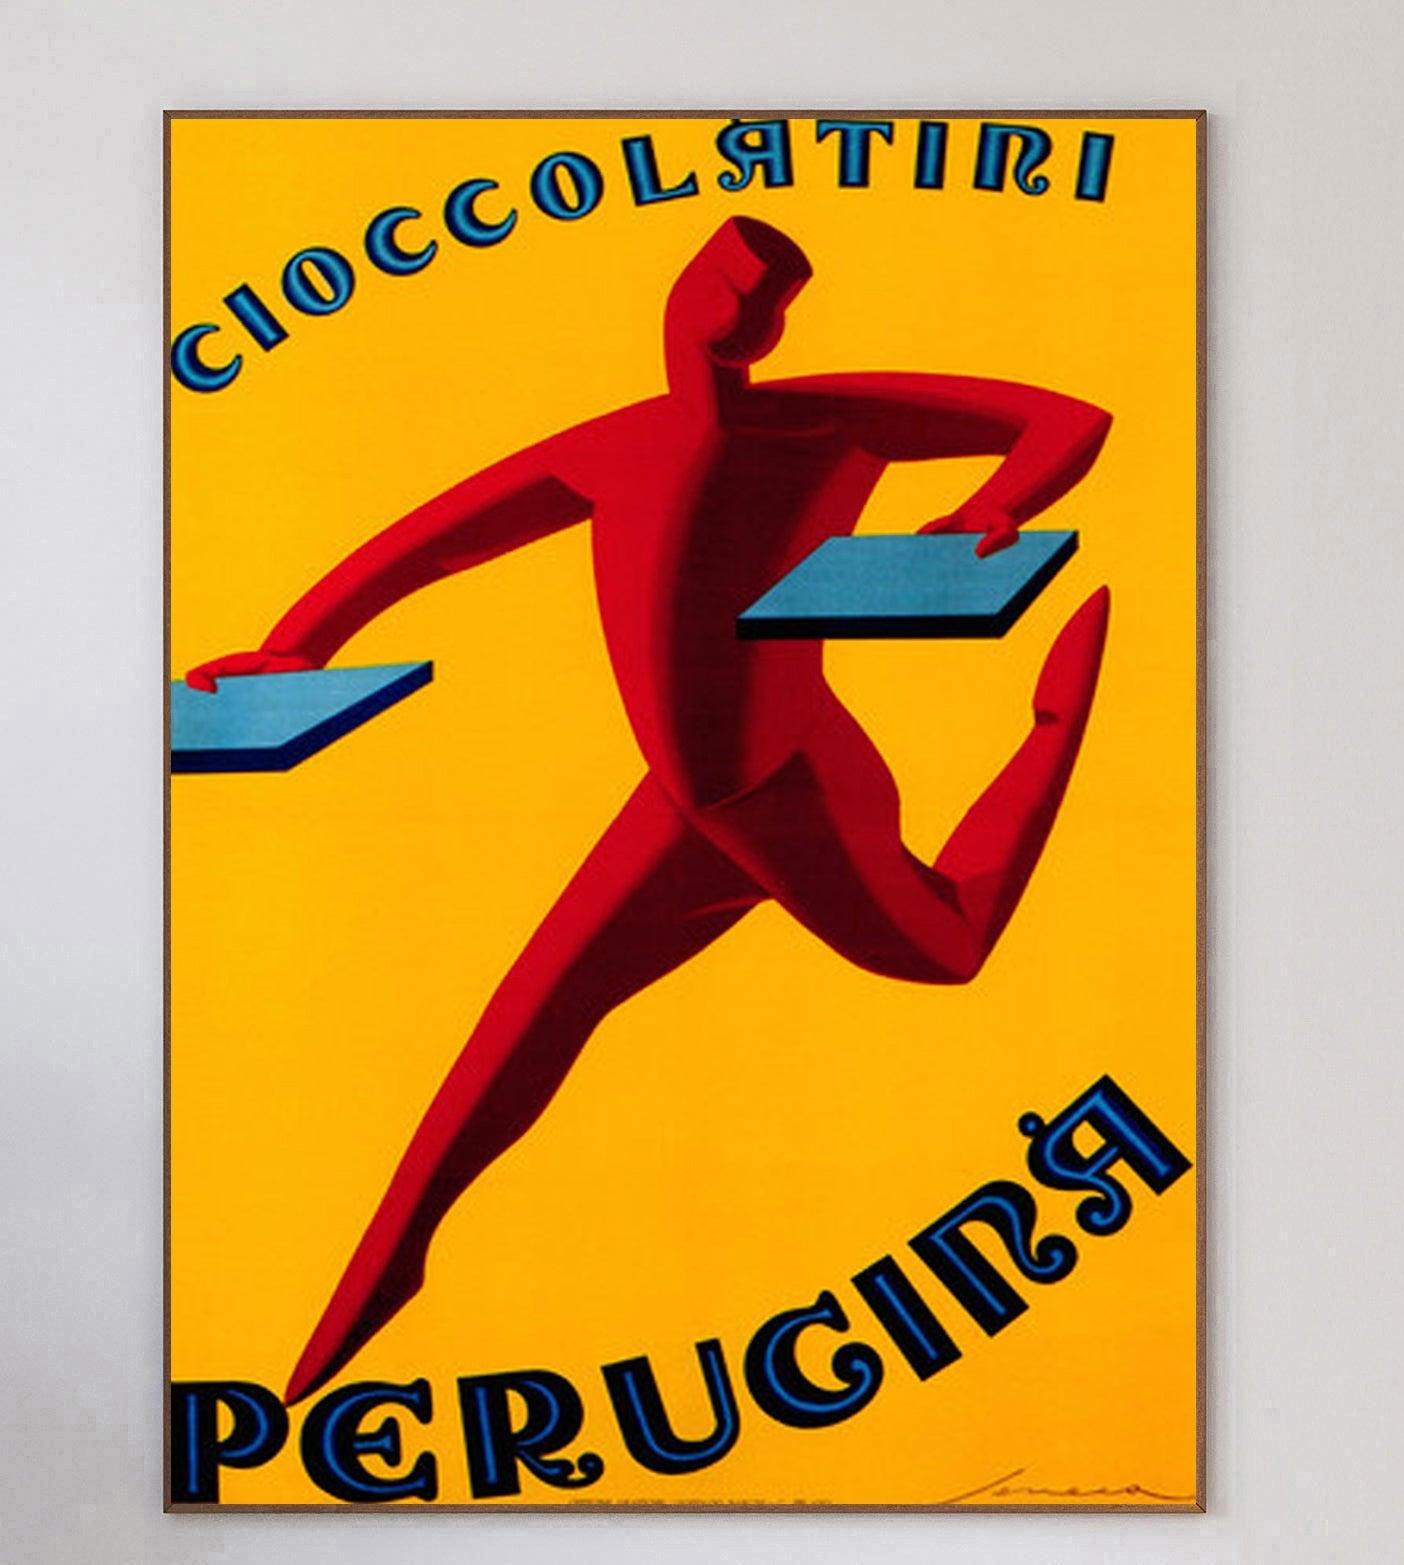 Das 1907 gegründete und nach der Stadt, in der es seinen Sitz hat, benannte Unternehmen Perugina ist ein italienischer Schokoladen- und Süßwarenhersteller, der auch heute noch tätig ist.

Dieses schöne Art-Déco-Design, das eine rennende Figur mit